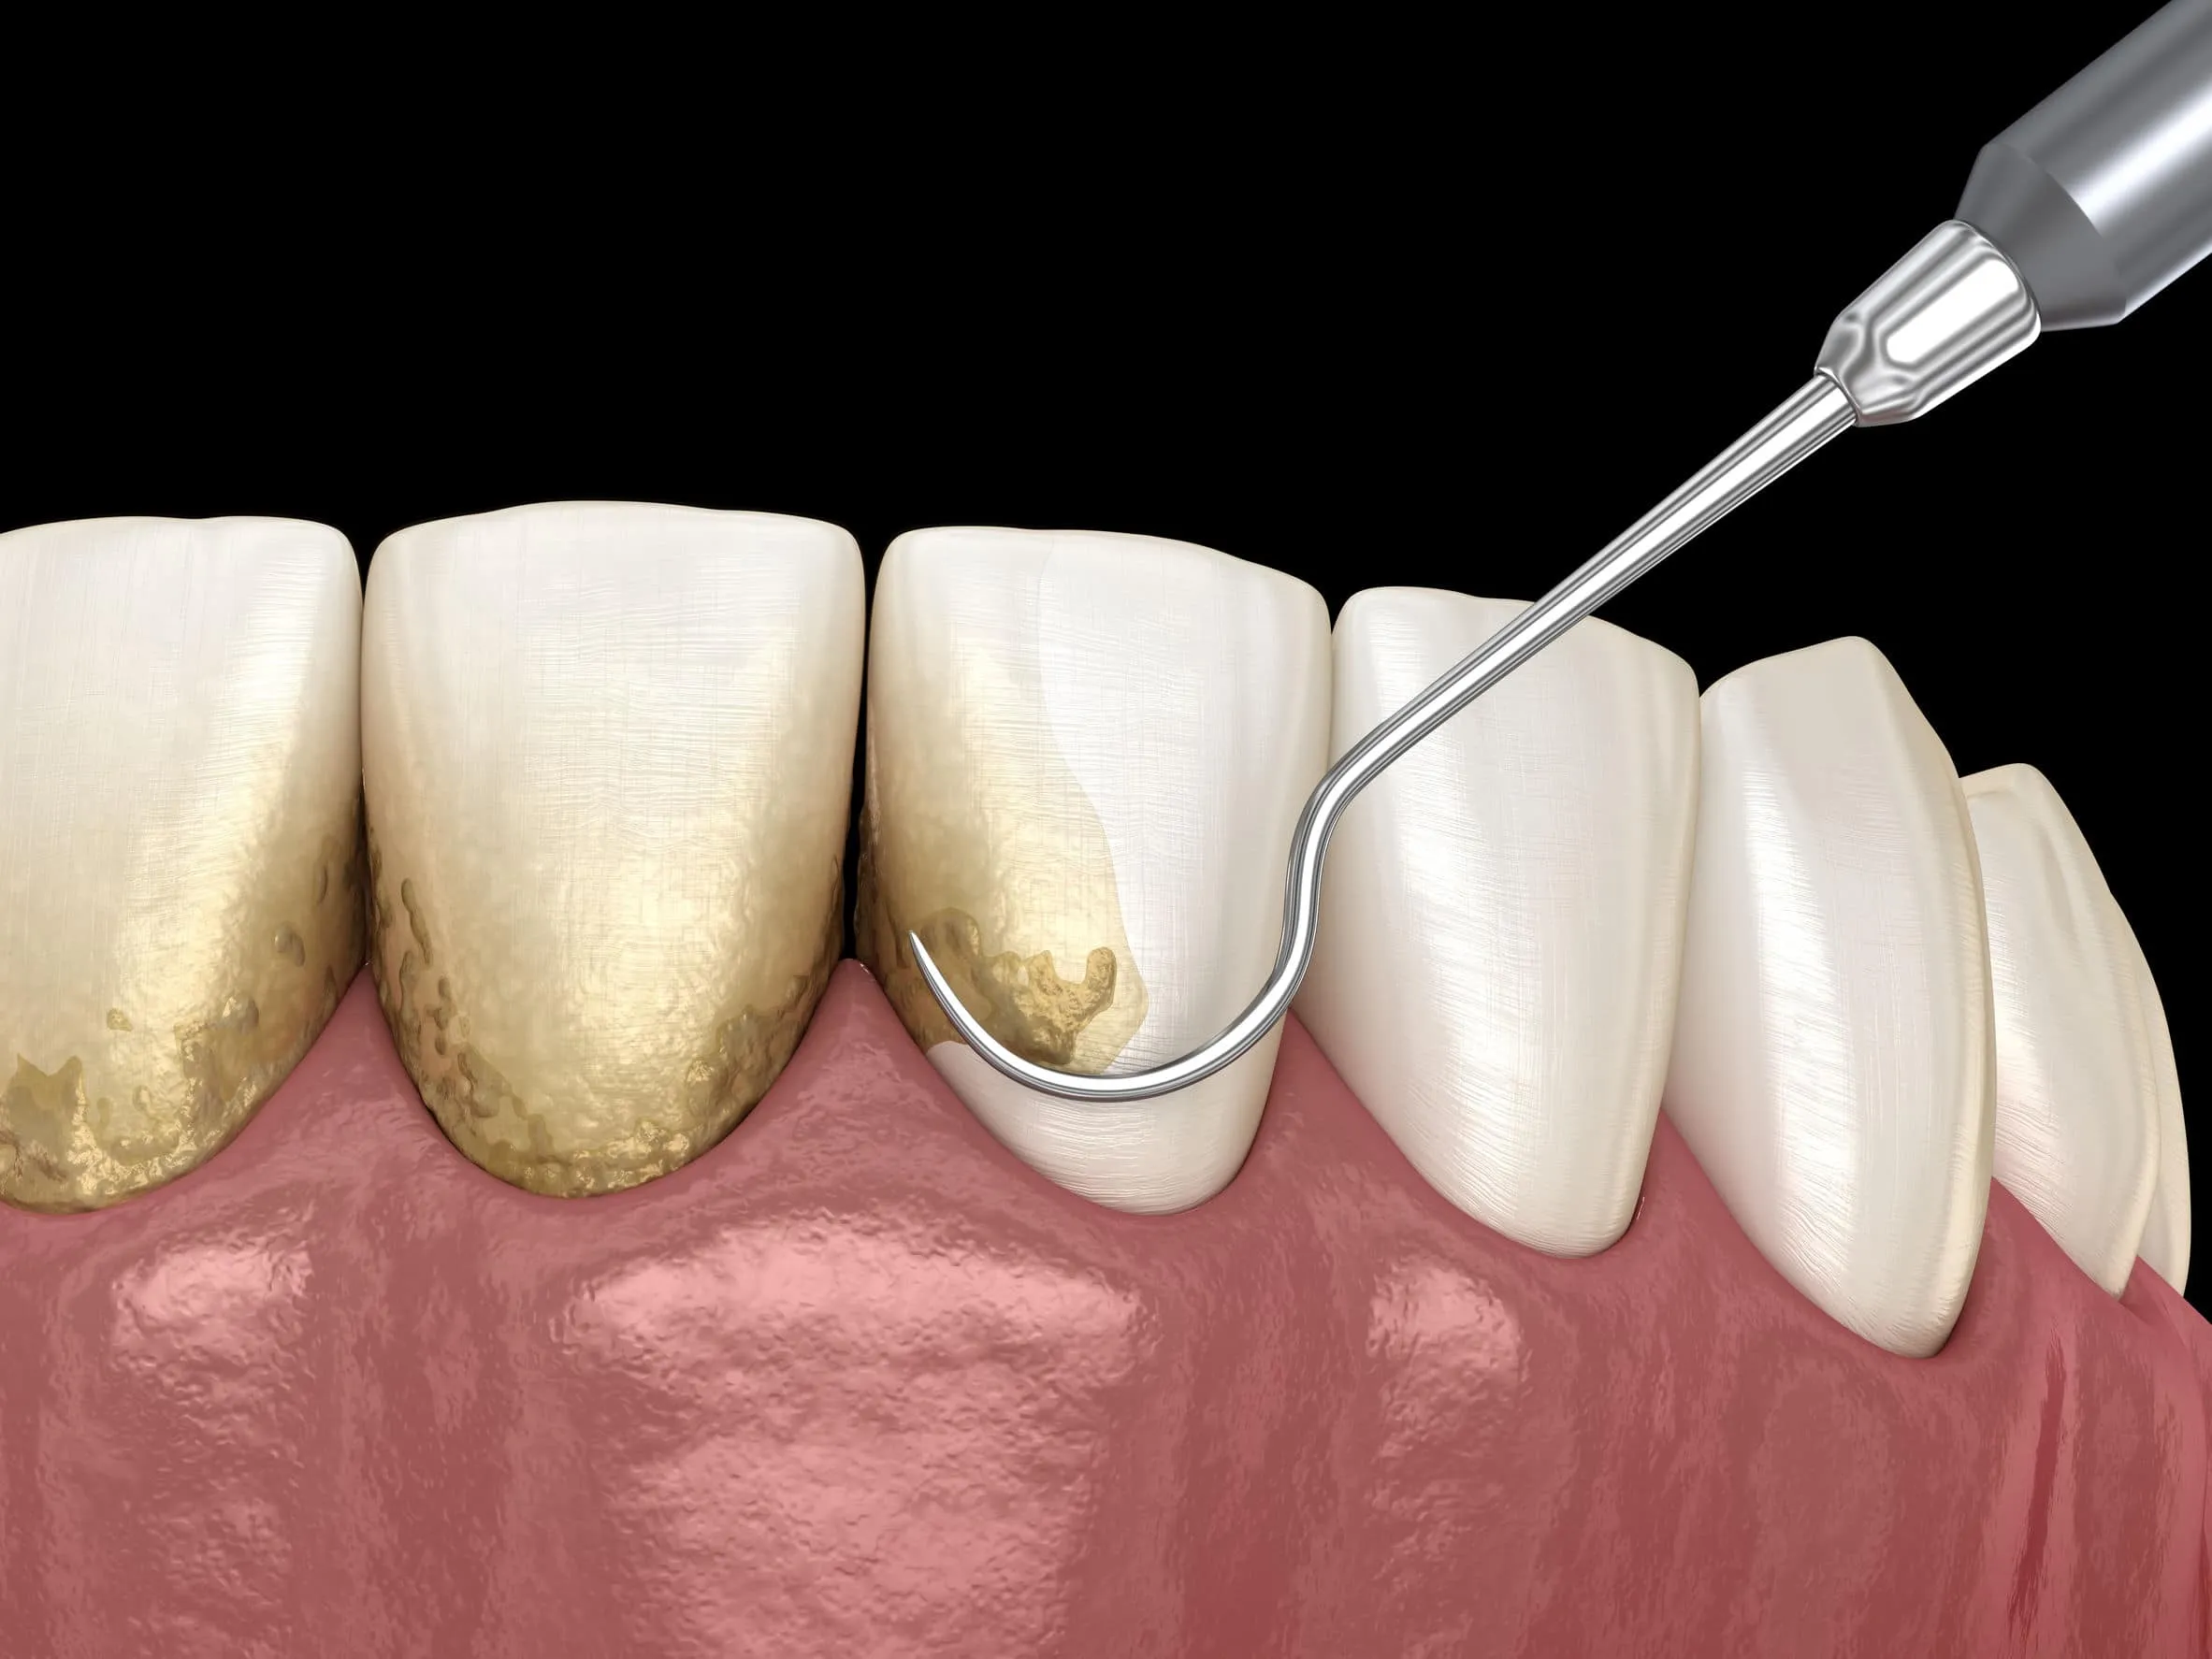 Lấy cao răng định kỳ cải thiện sức khỏe răng miệng